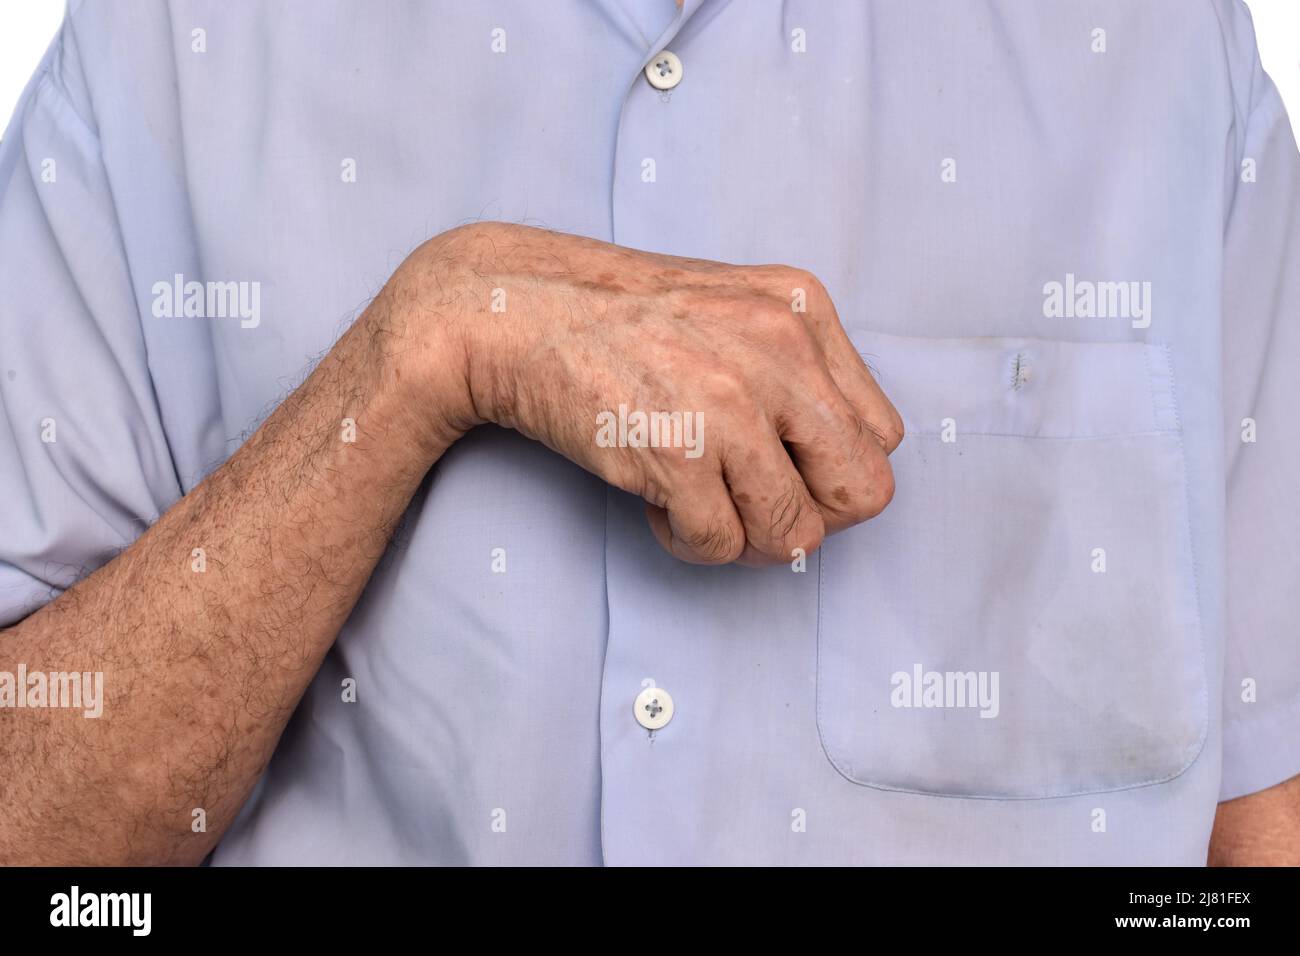 Rigidità muscolare della mano e flessione delle dita dell'anziano asiatico. Foto Stock